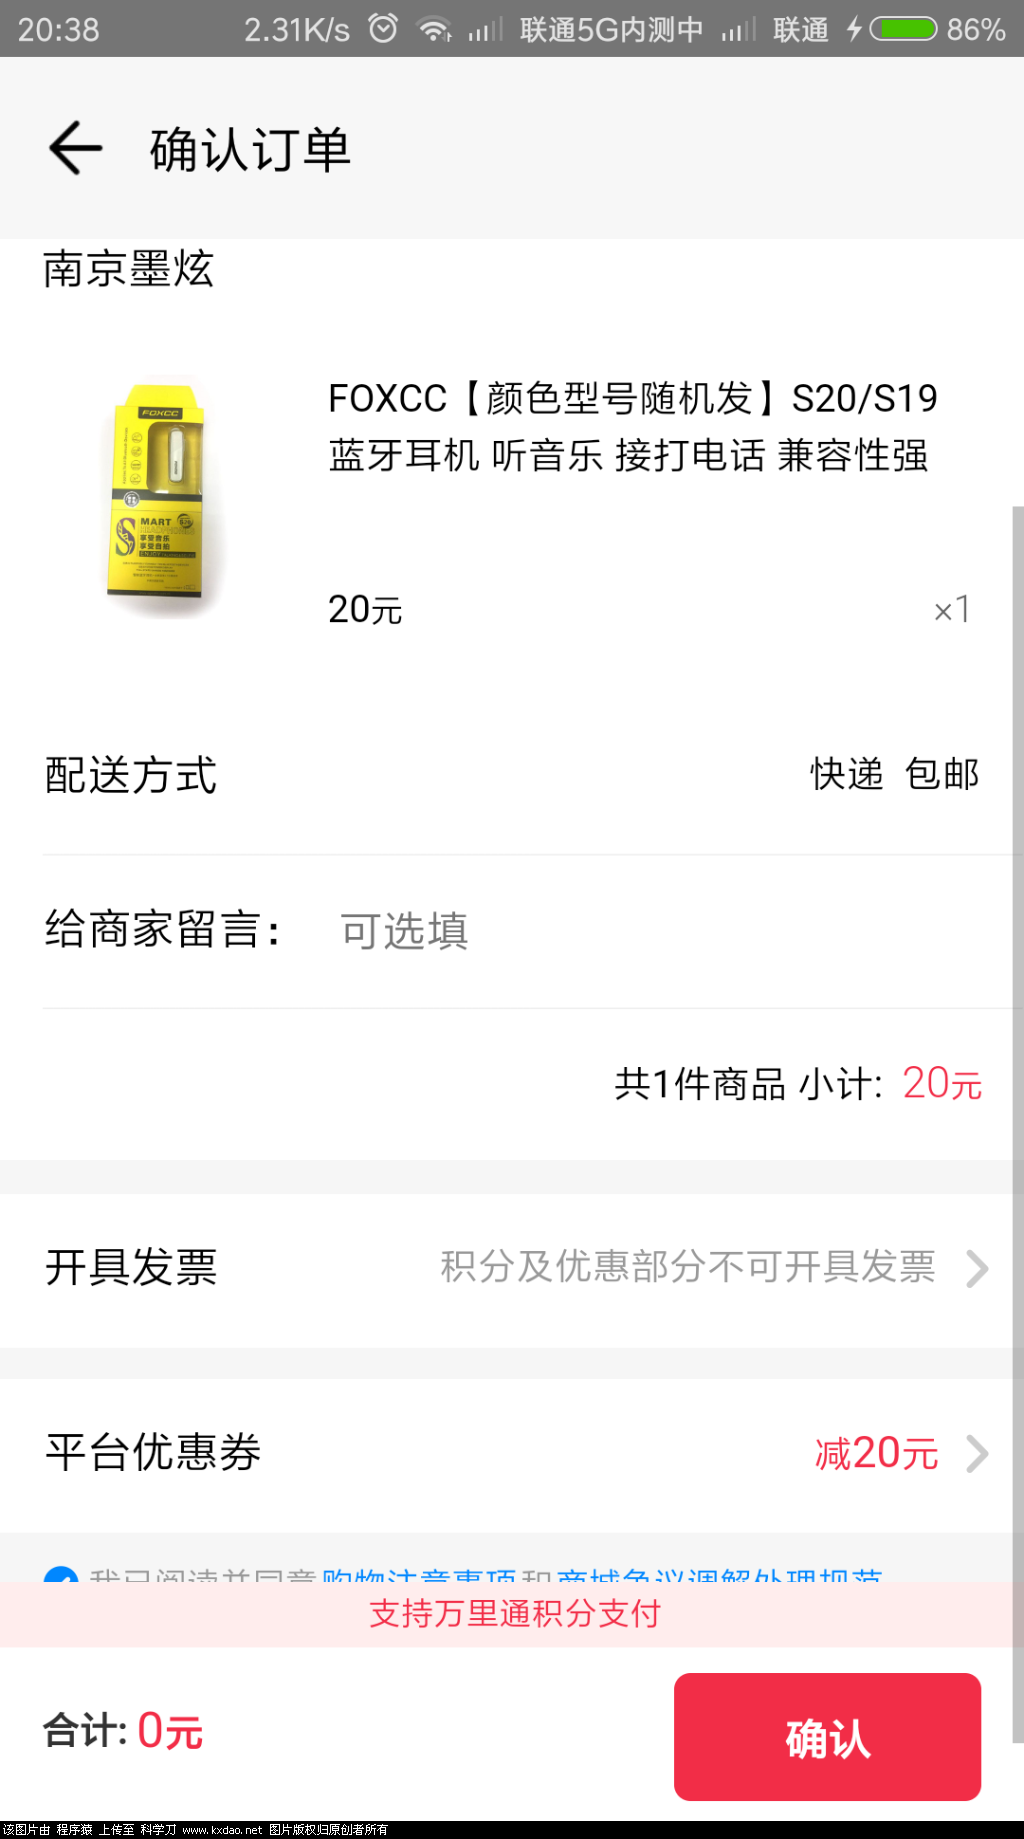 Screenshot_2018-07-24-20-38-28-885_com.paic.zhifu.wallet.activity.png